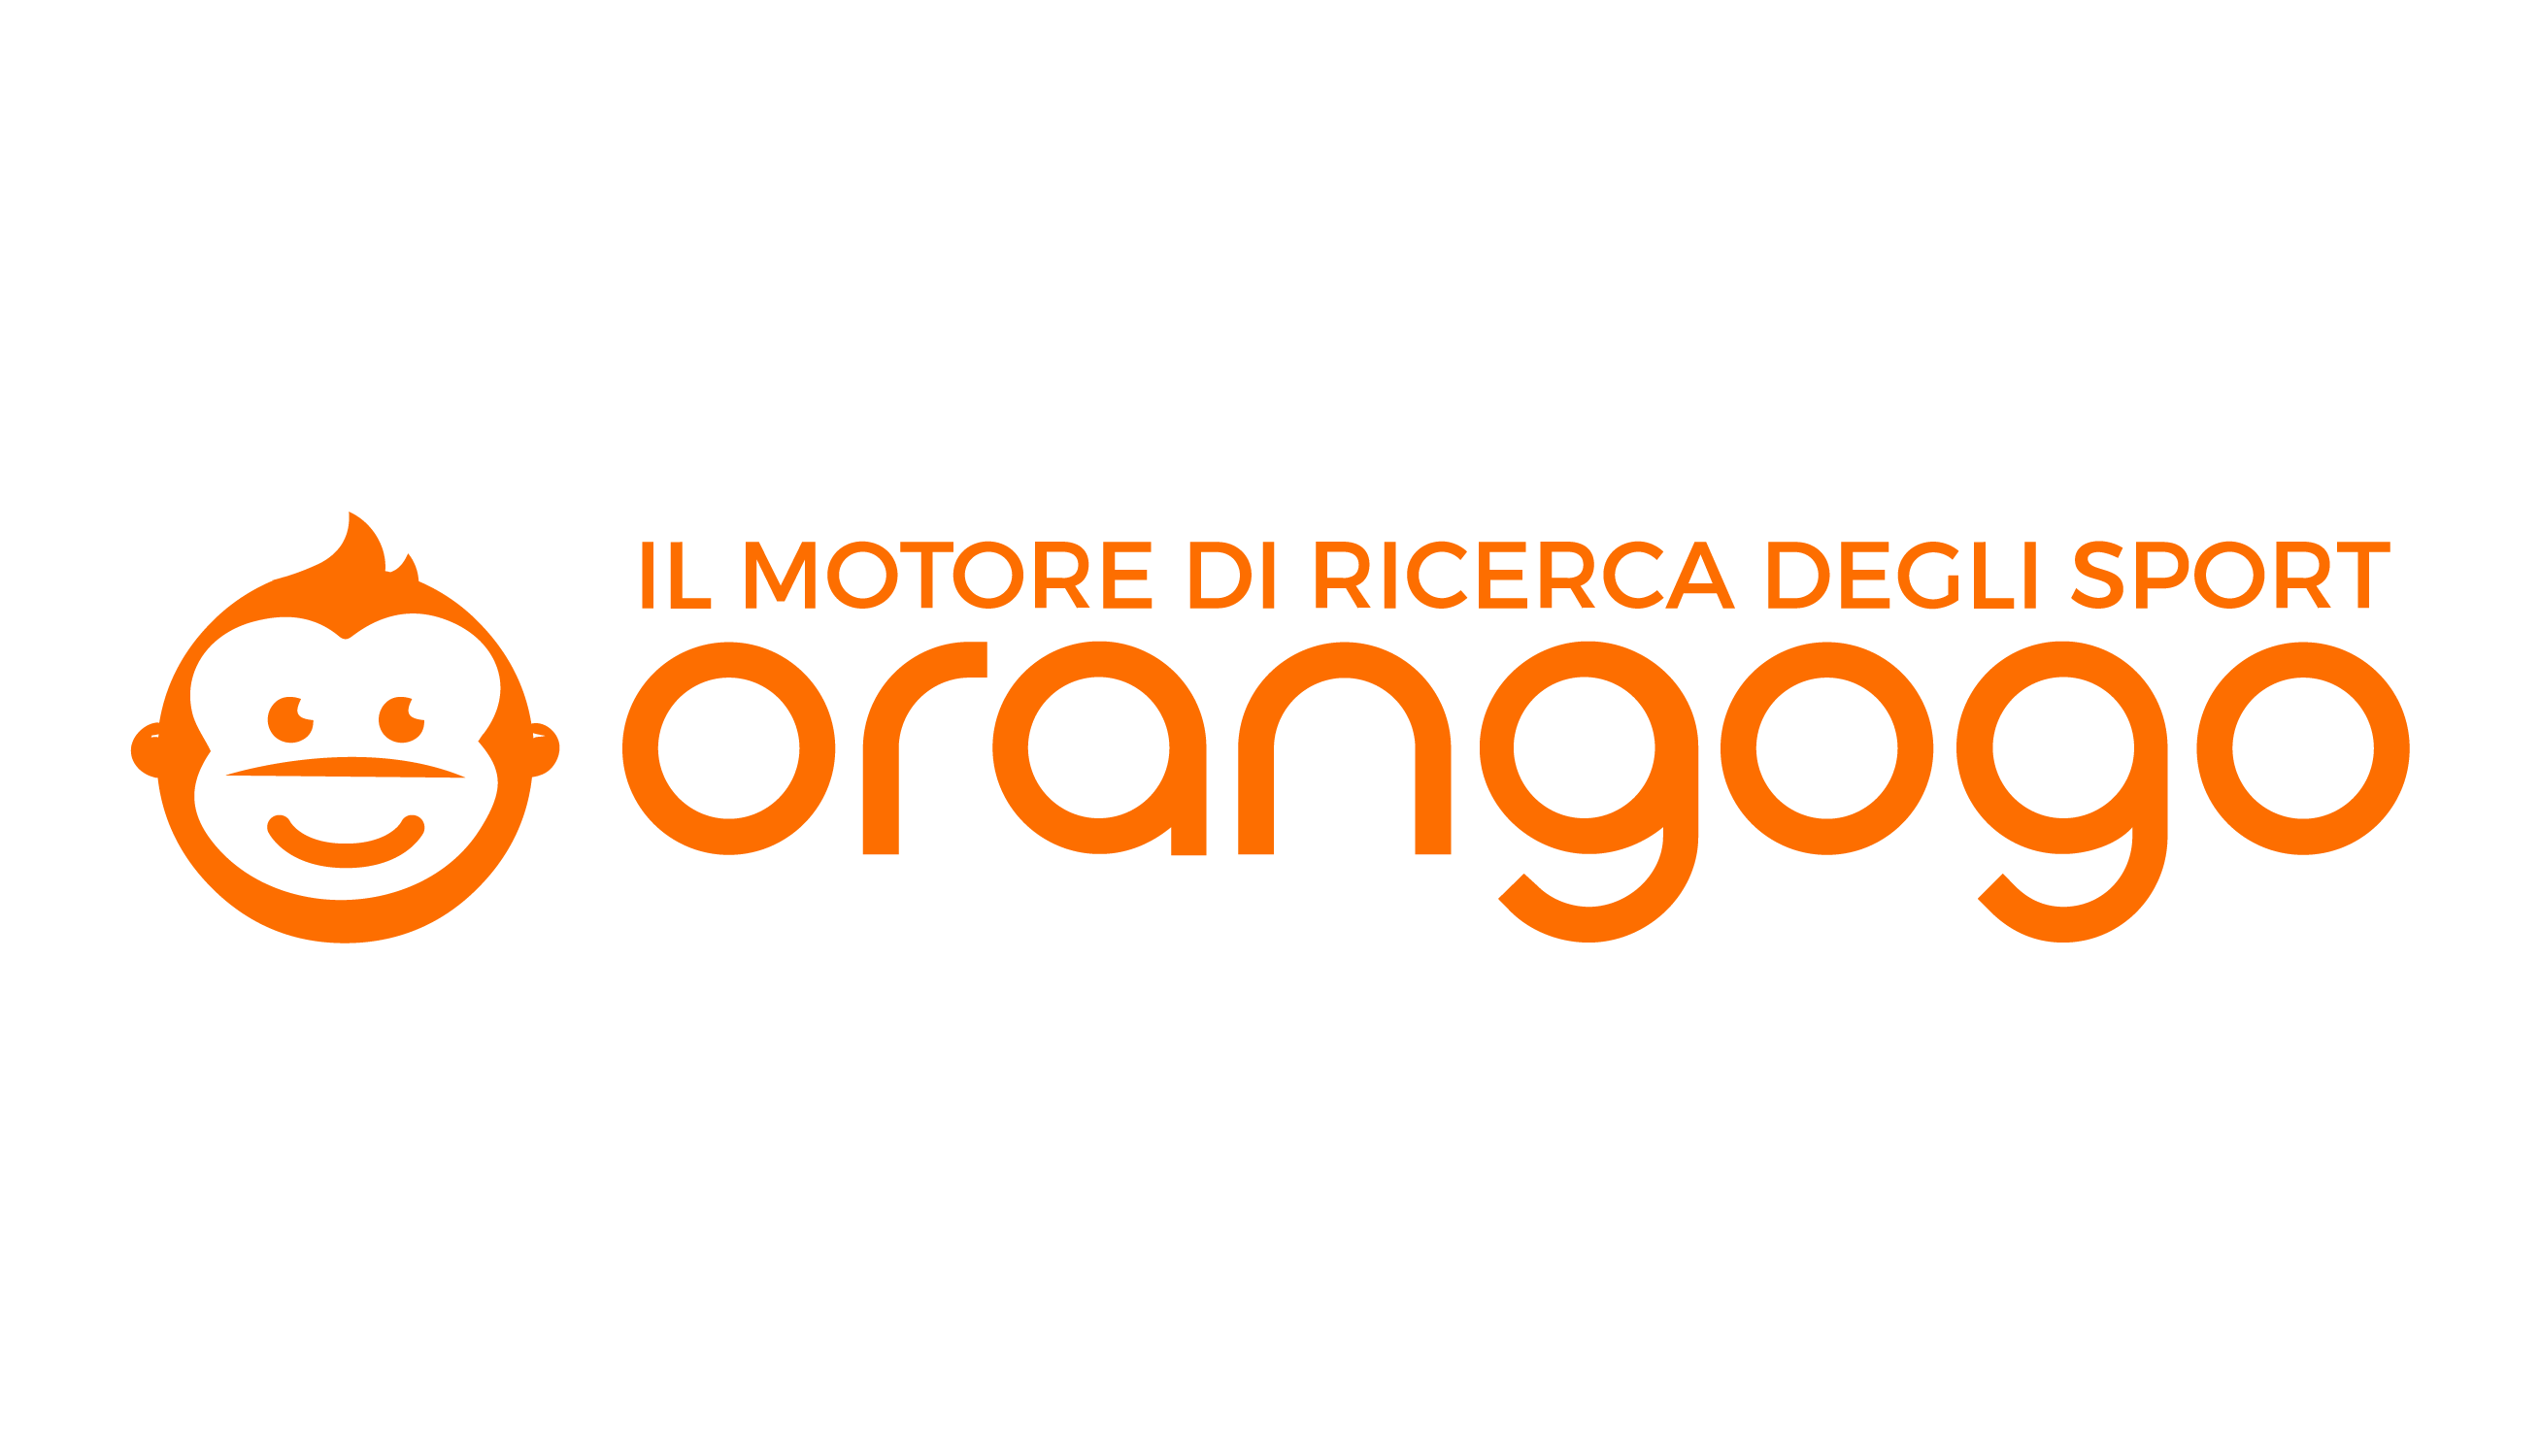 Promozione Orangogo